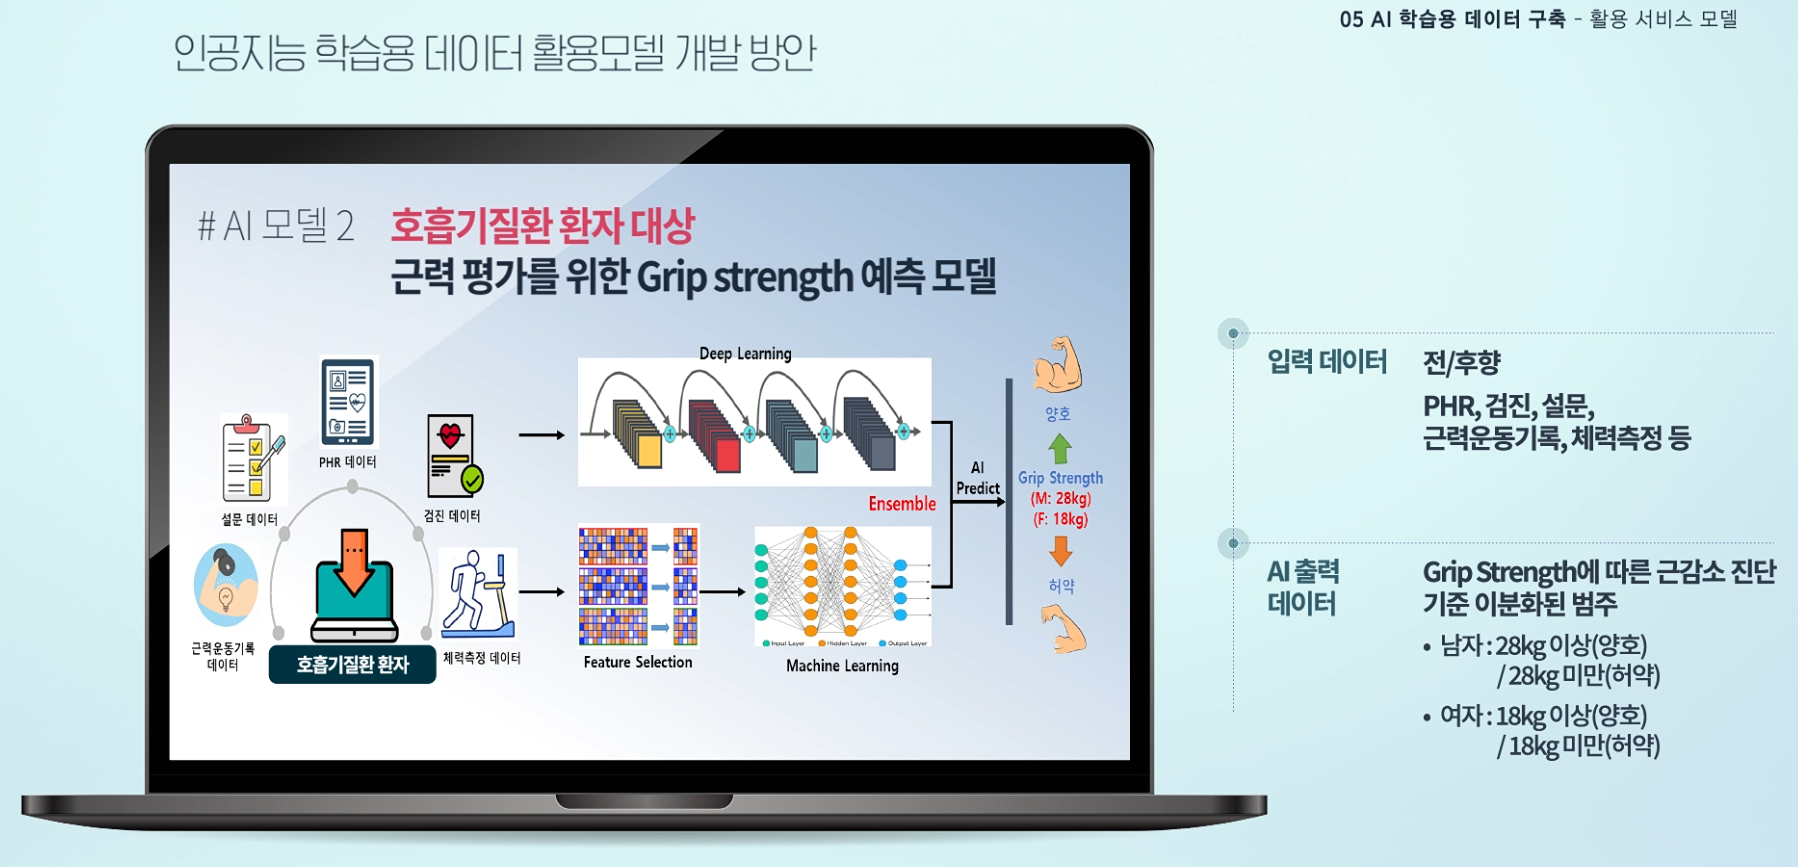 호흡기질환 환자 대상 근력 평가를 위한 Grip strength 예측 모델